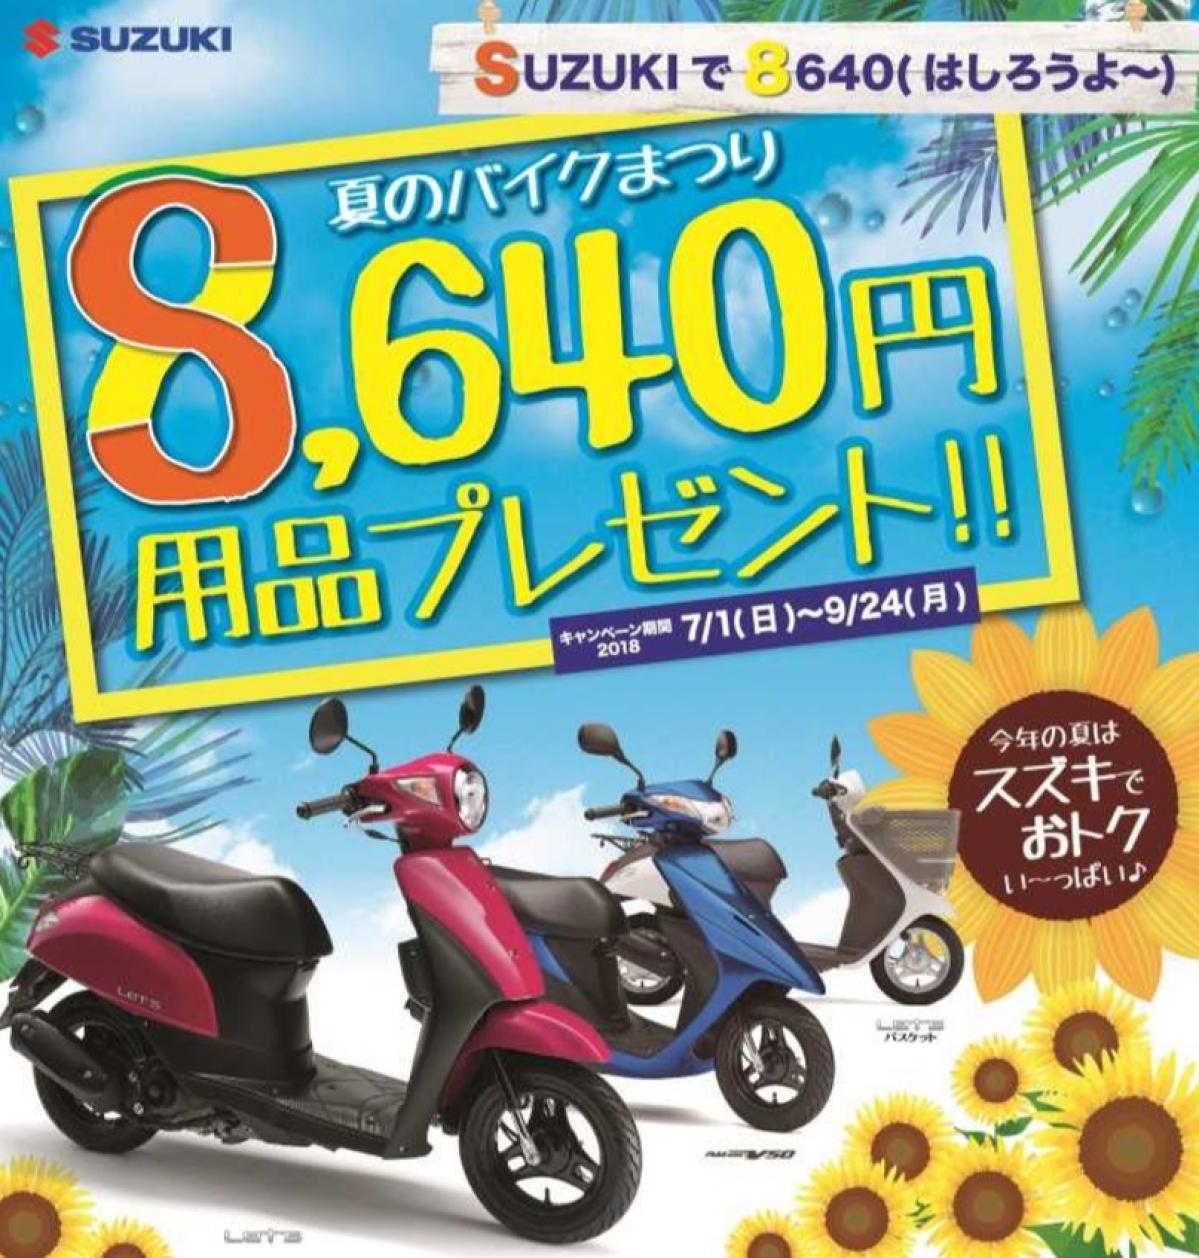 耳心地イイ語呂合わせ! ? 「SUZUKIで8640( しろうよ~) 夏のバイクまつり8,640円用品プレゼント!!」